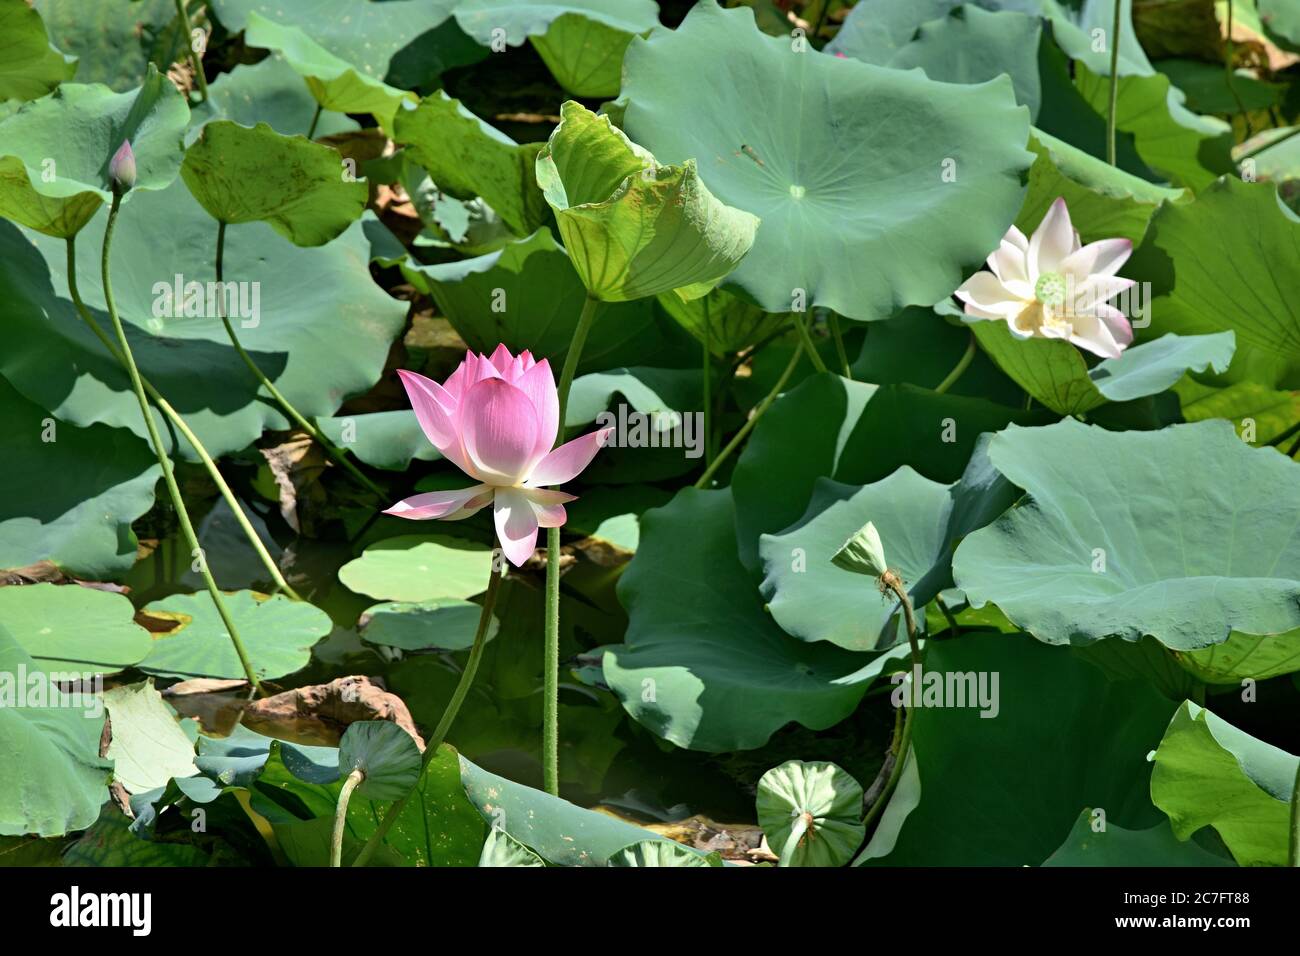 Flor de loto - símbolo de la belleza divina y la pureza. Pequeño lago cubierto de loto en plena floración. Foto de stock